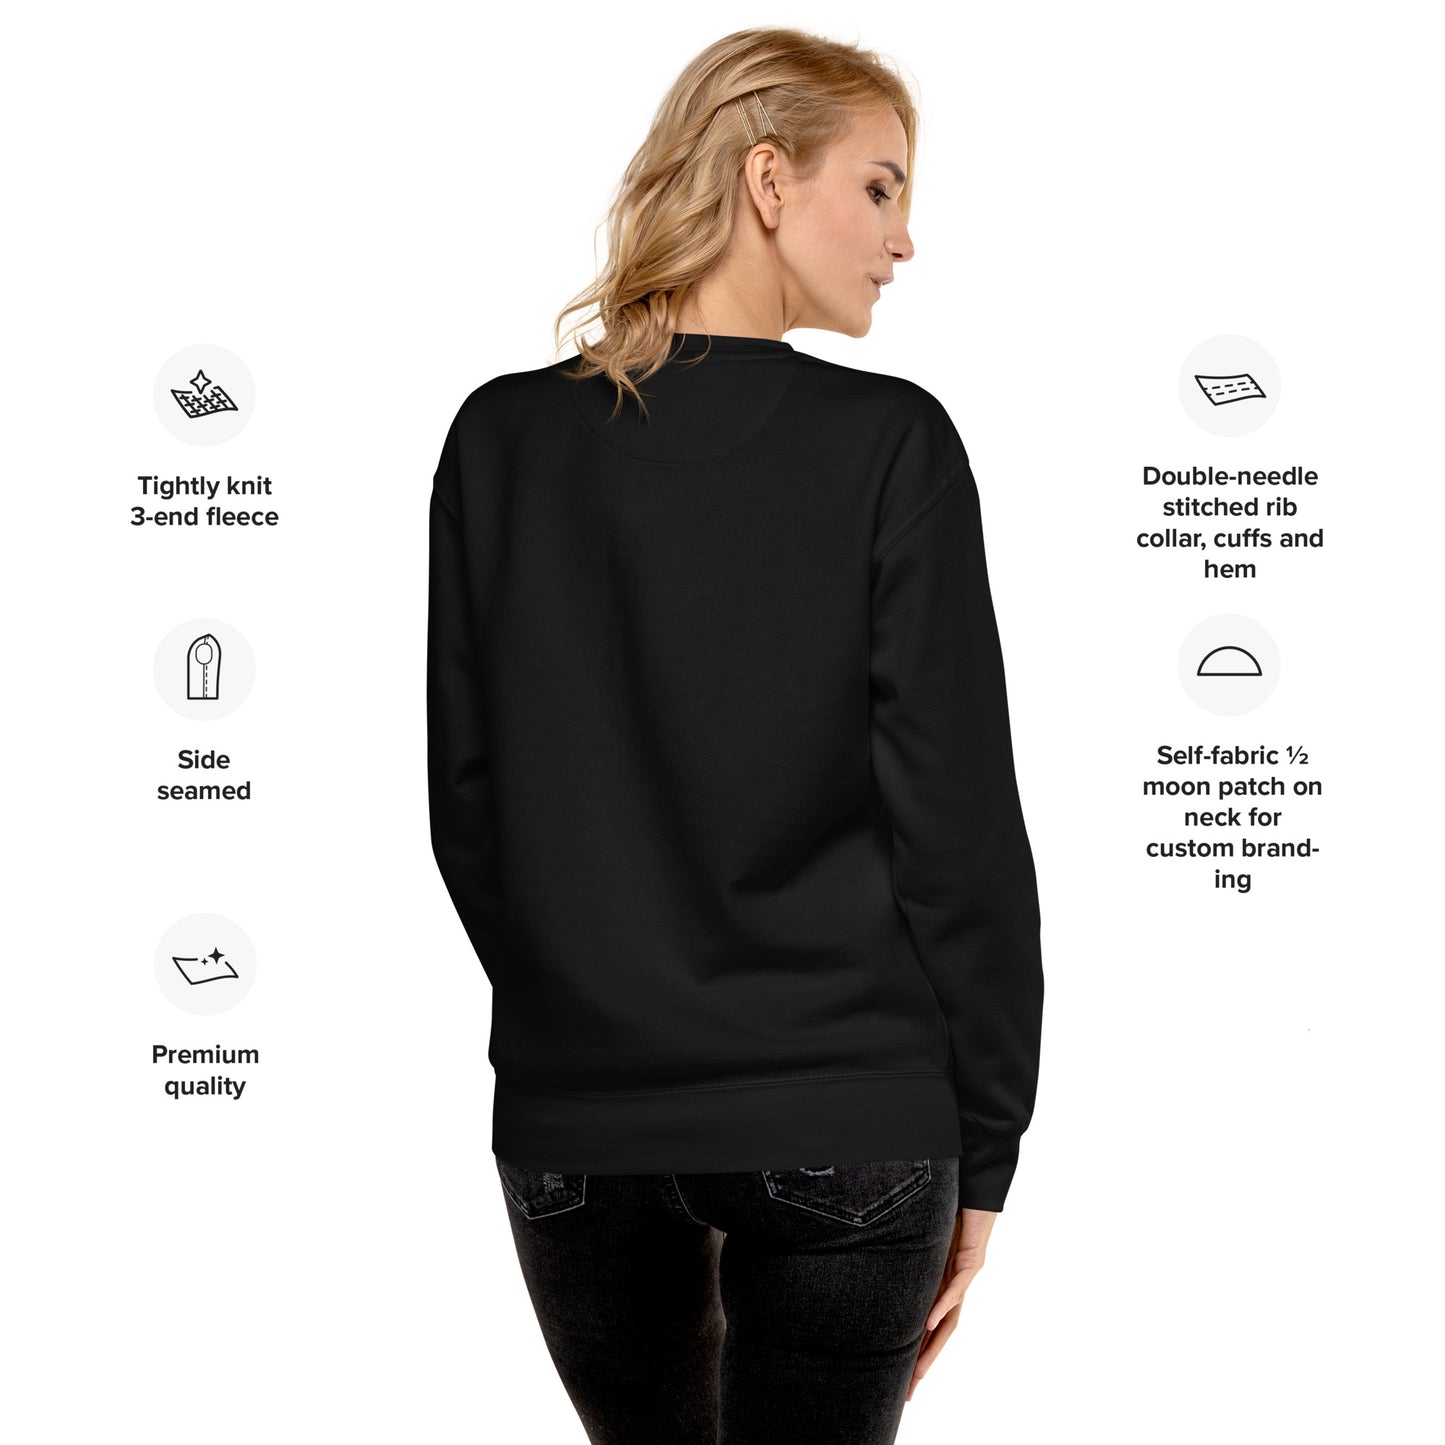 Black.Boho. Classic Unisex Premium Sweatshirt